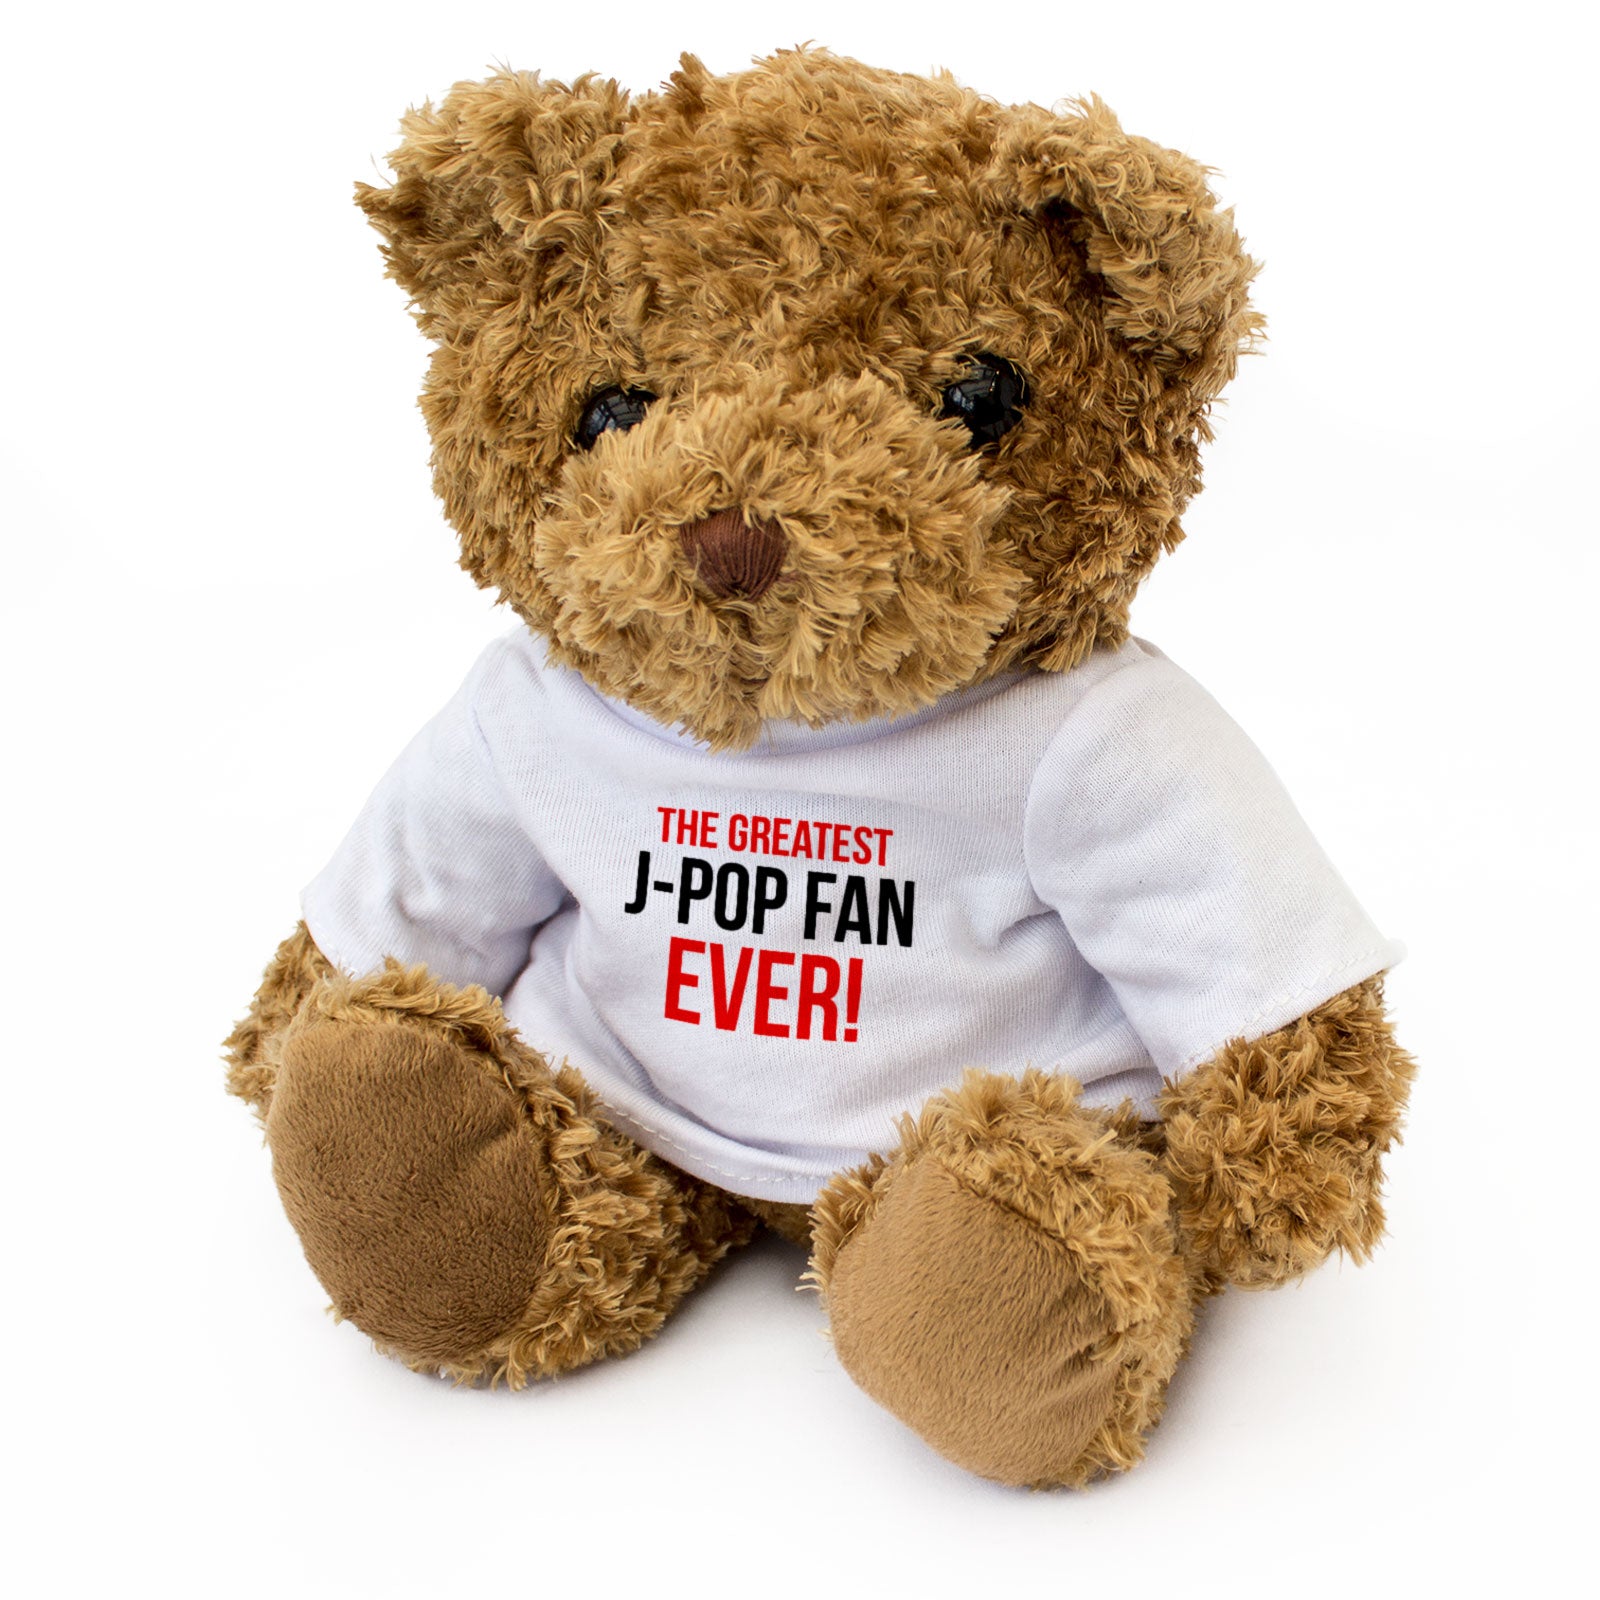 The Greatest J-Pop Fan Ever - Teddy Bear